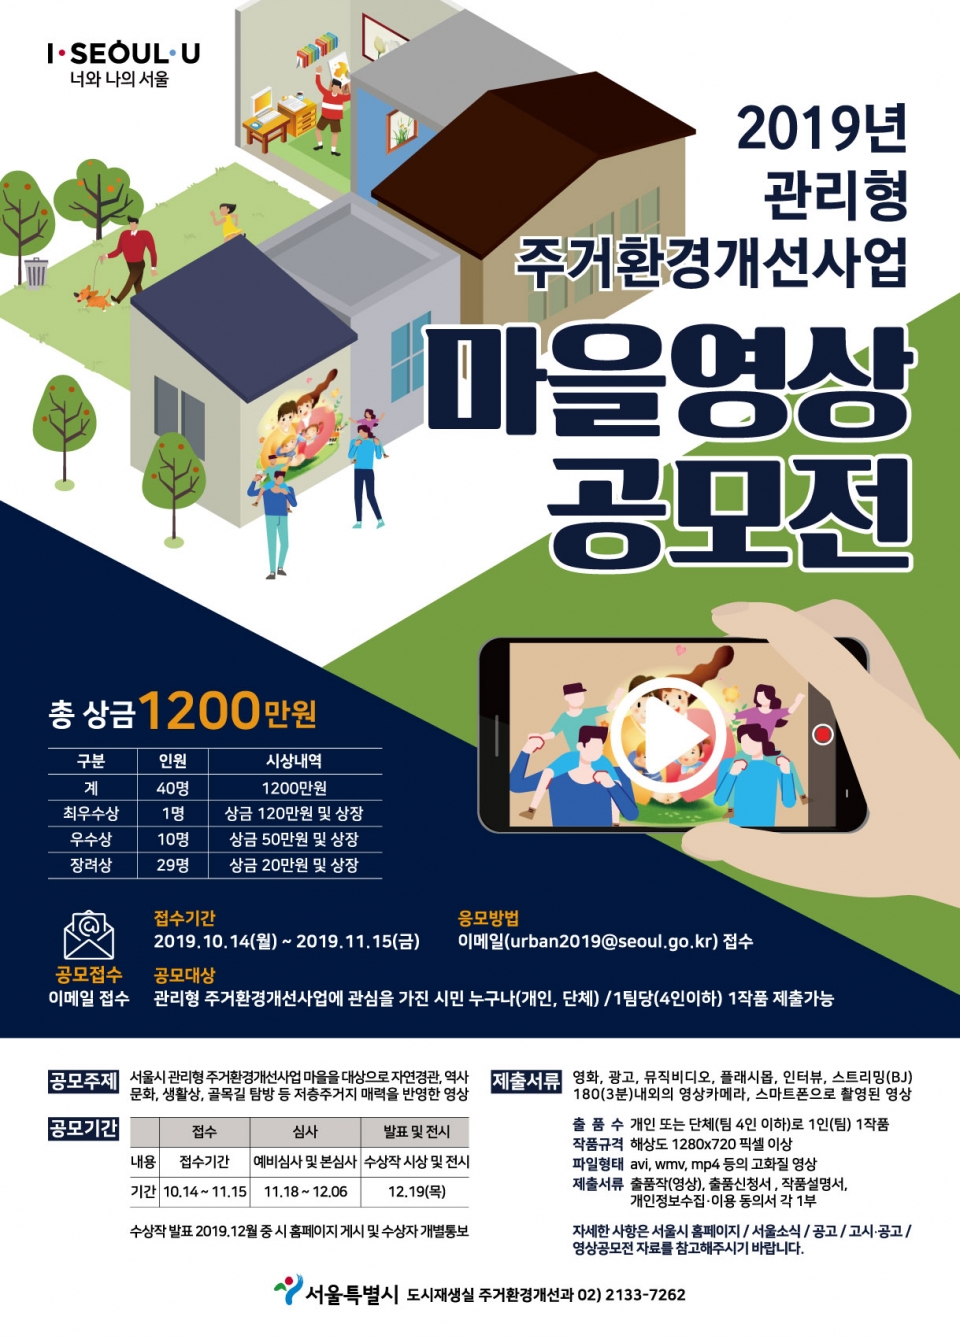 ‘마을 영상 공모전’ 포스터. (자료 서울시 제공)